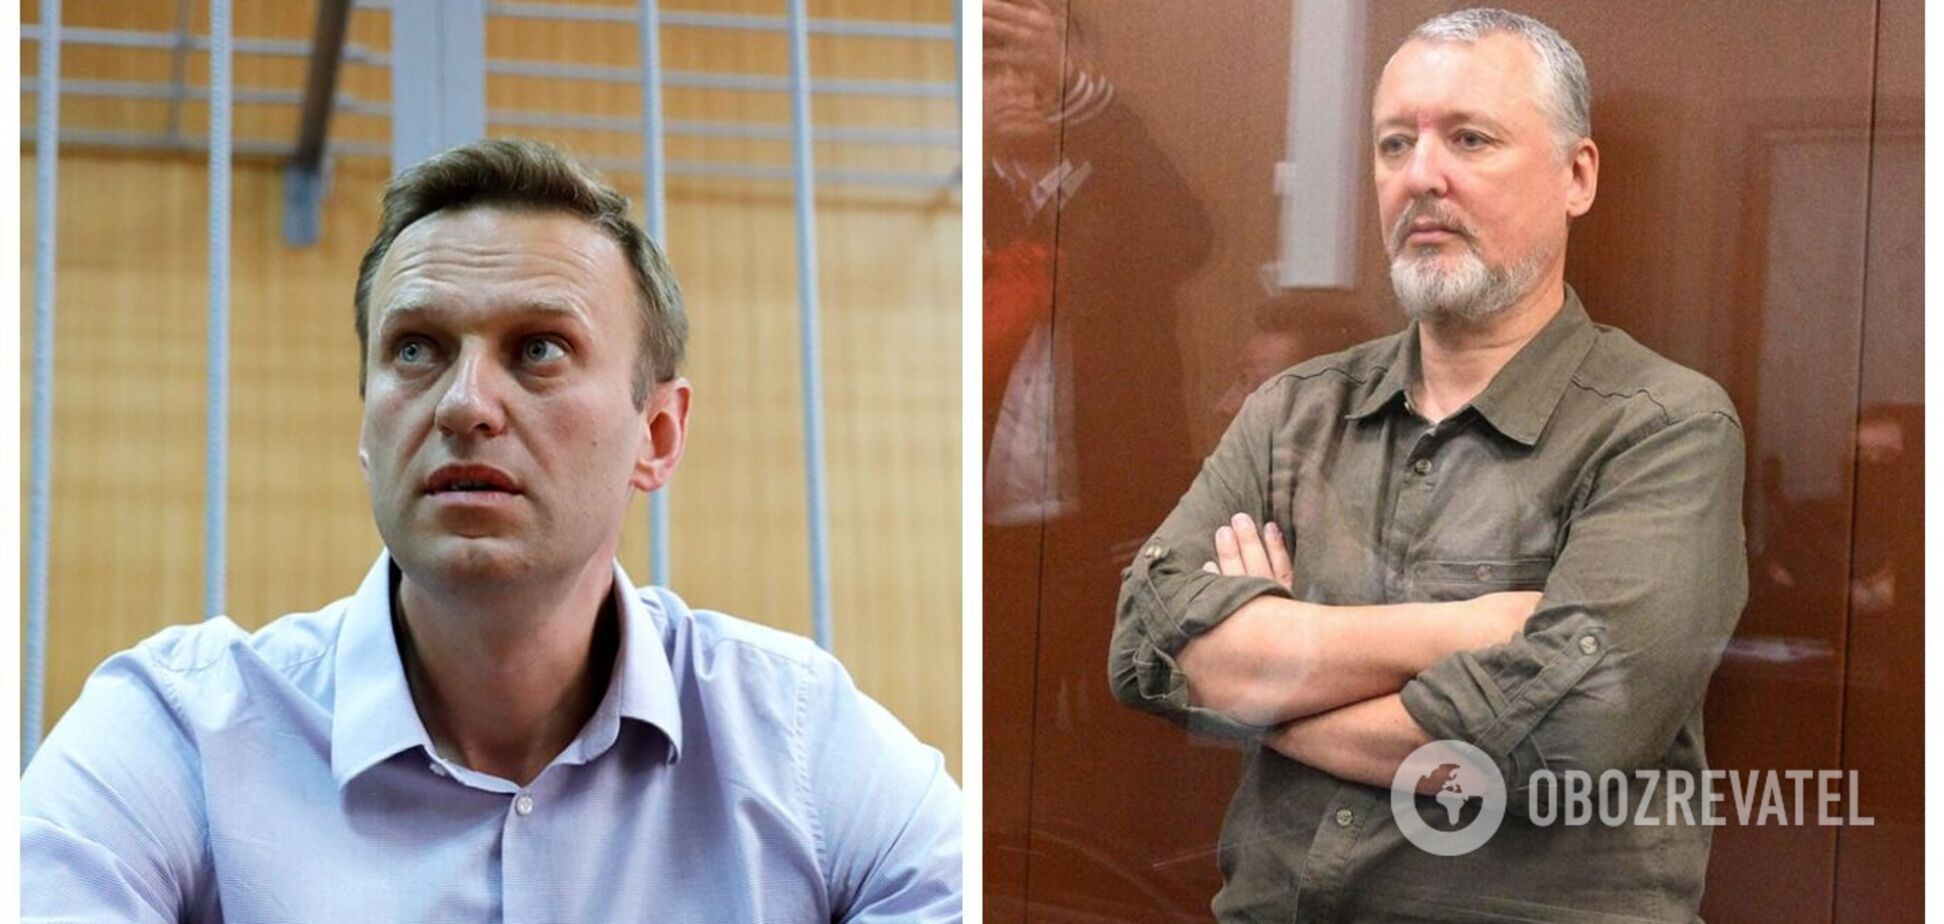 'Задержан незаконно': Навальный назвал террориста Гиркина 'политическим заключенным'